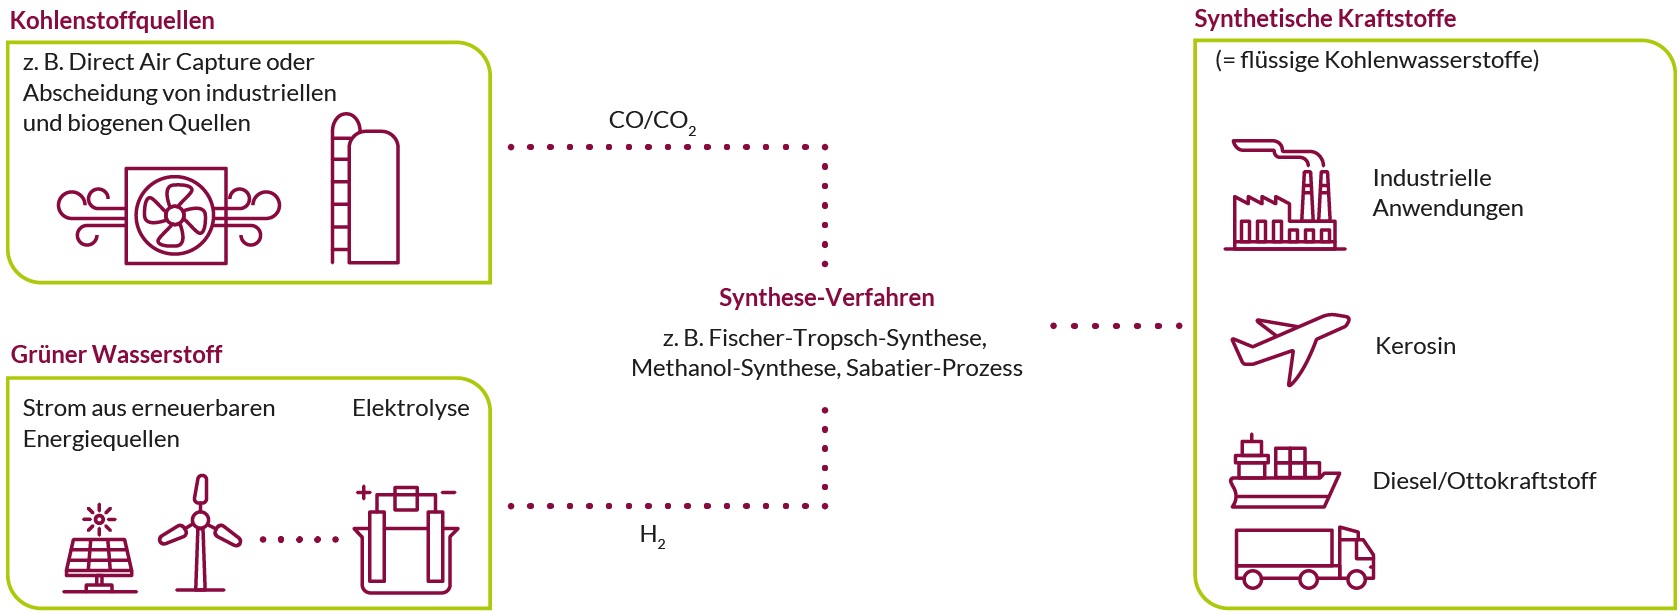 Vereinfachte, beispielhafte Darstellung von Herstellungs- und Nutzungspfaden synthetischer Kraftstoffe